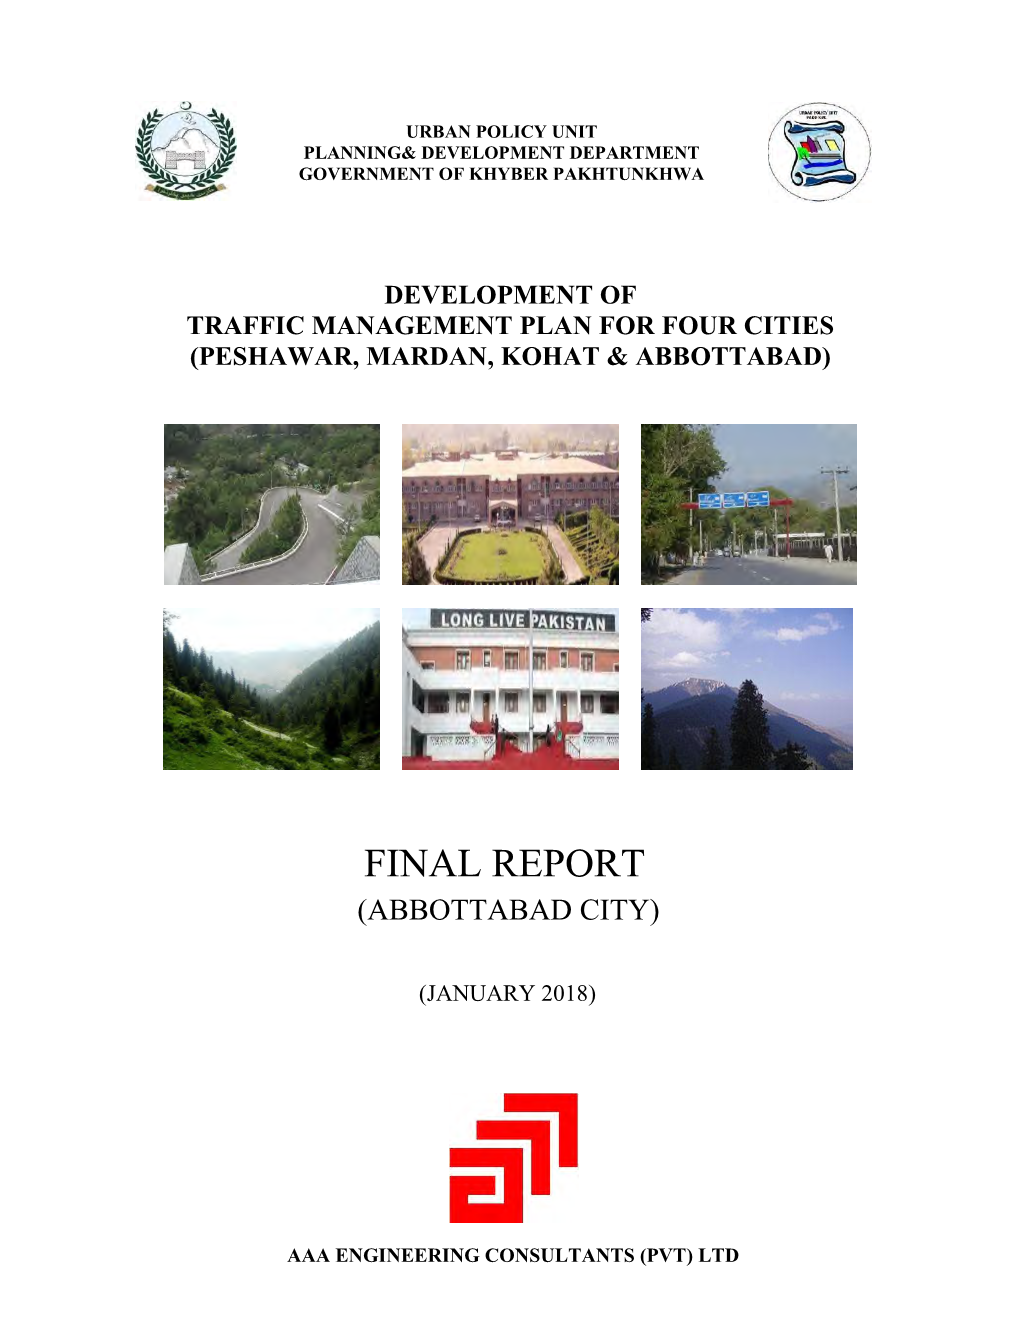 Traffic Management Plan Abbottabad City